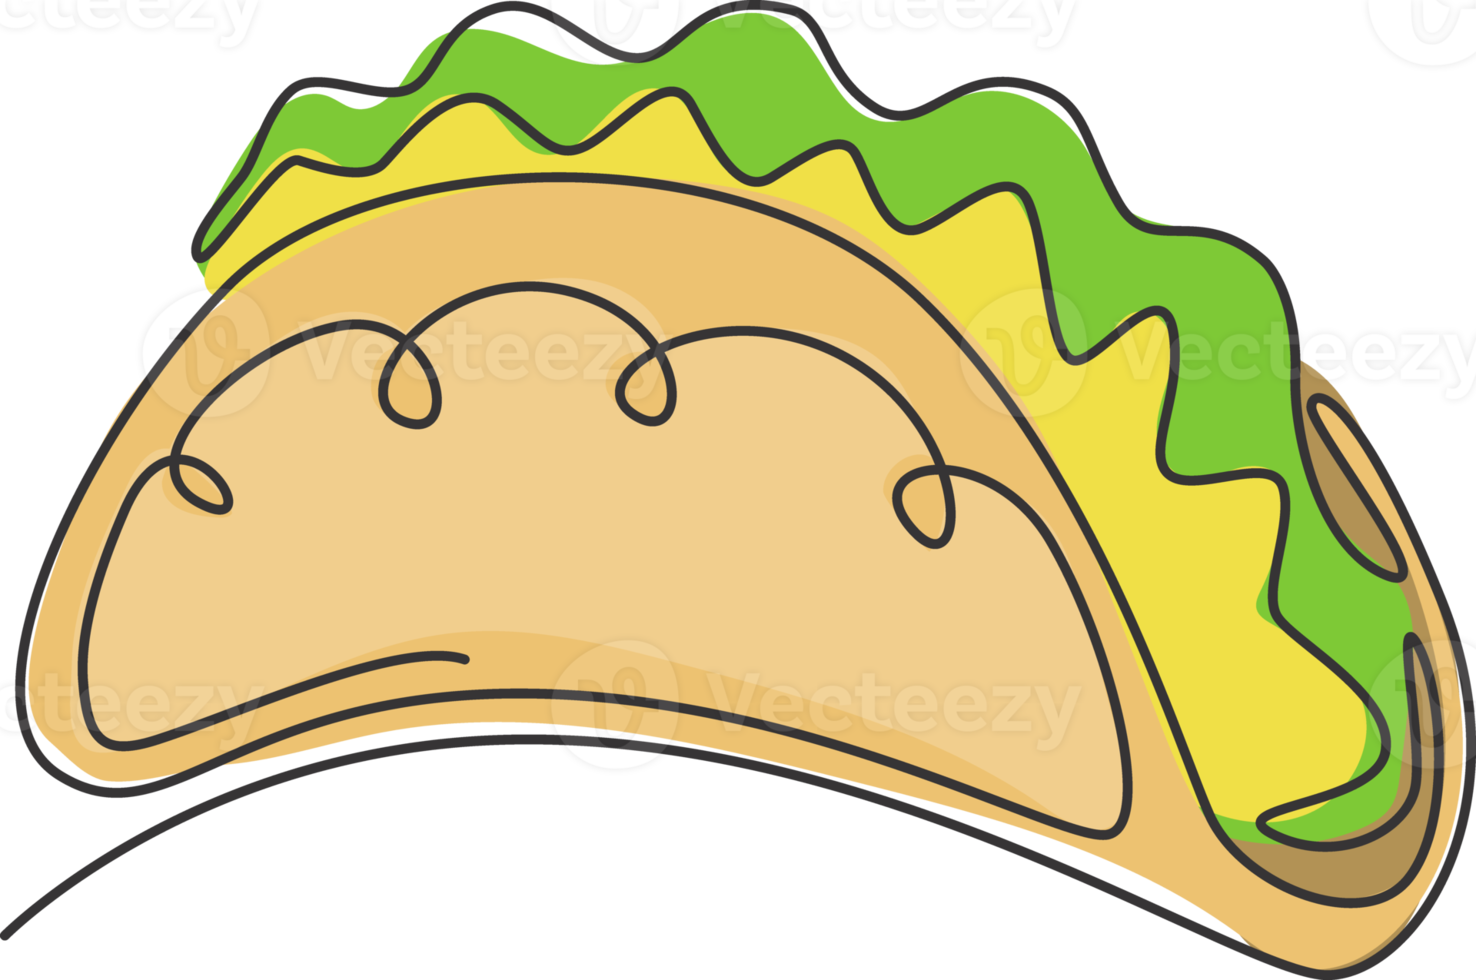 dessin en ligne continue unique de l'étiquette stylisée du logo tacos mexicain. concept de restaurant nacho de restauration rapide emblème. illustration vectorielle de conception de dessin à une ligne moderne pour un café, un magasin ou un service de livraison de nourriture png